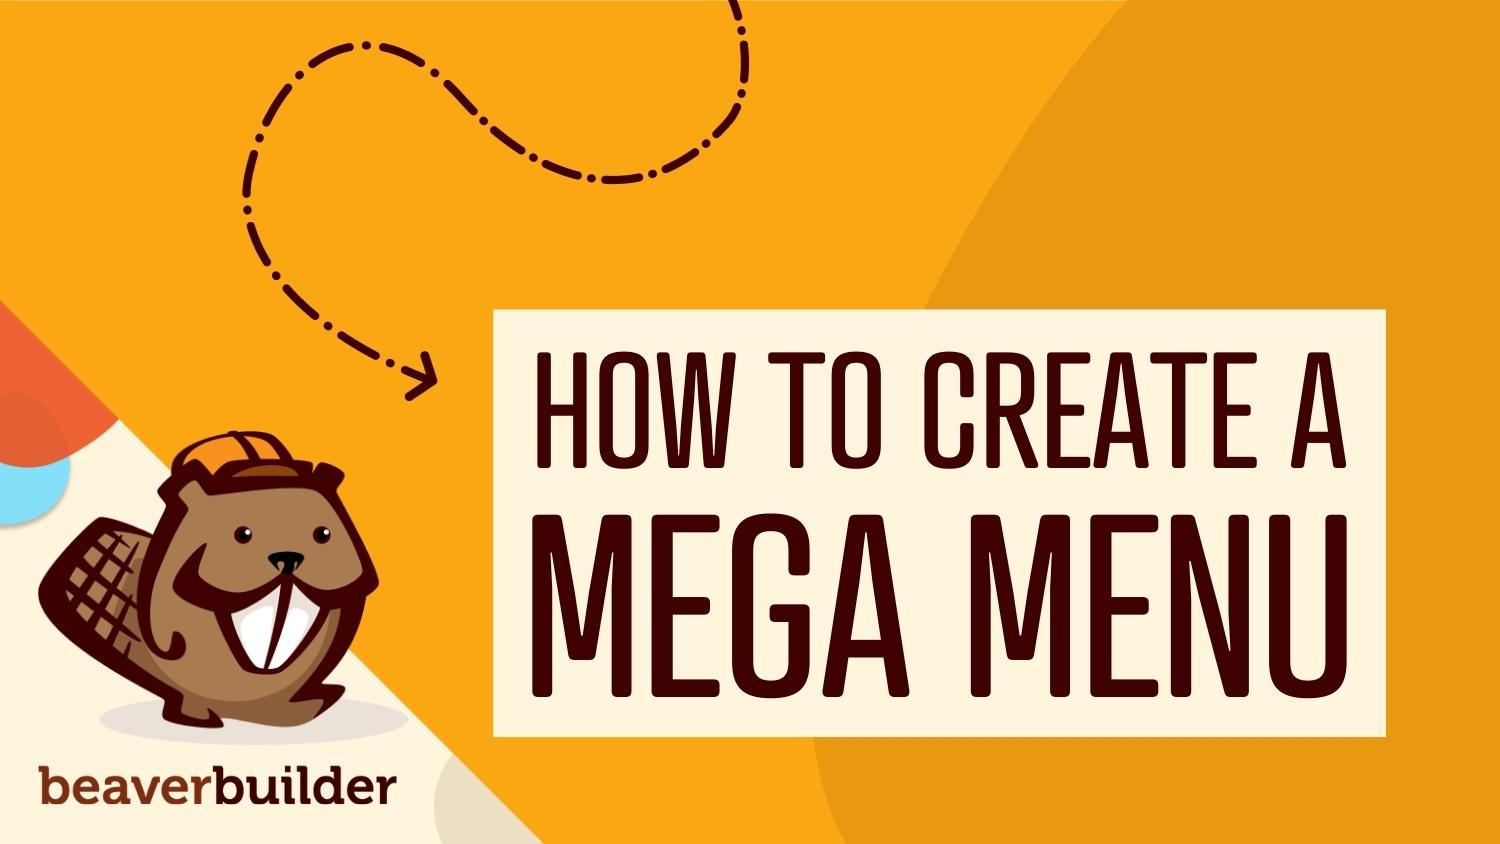 How to create a Mega Menu using Beaver Builder